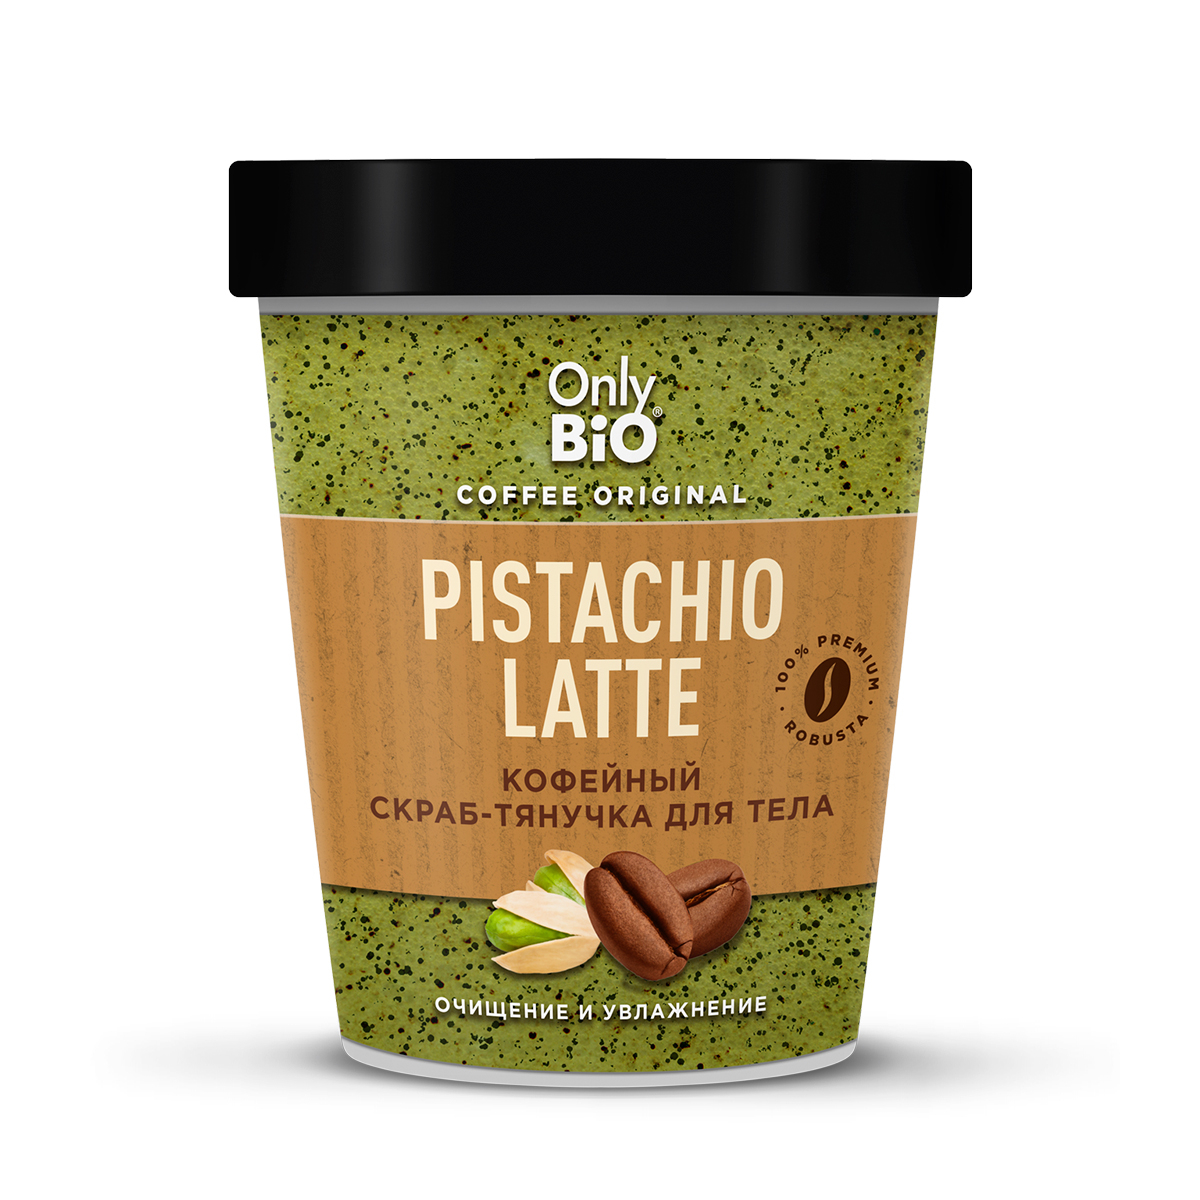 Скраб-тянучка для тела Only Bio Coffee Original Pistachio Latte кофейный, 230 мл скраб тянучка для тела kopusha семь пятниц 2 шт х 250 г